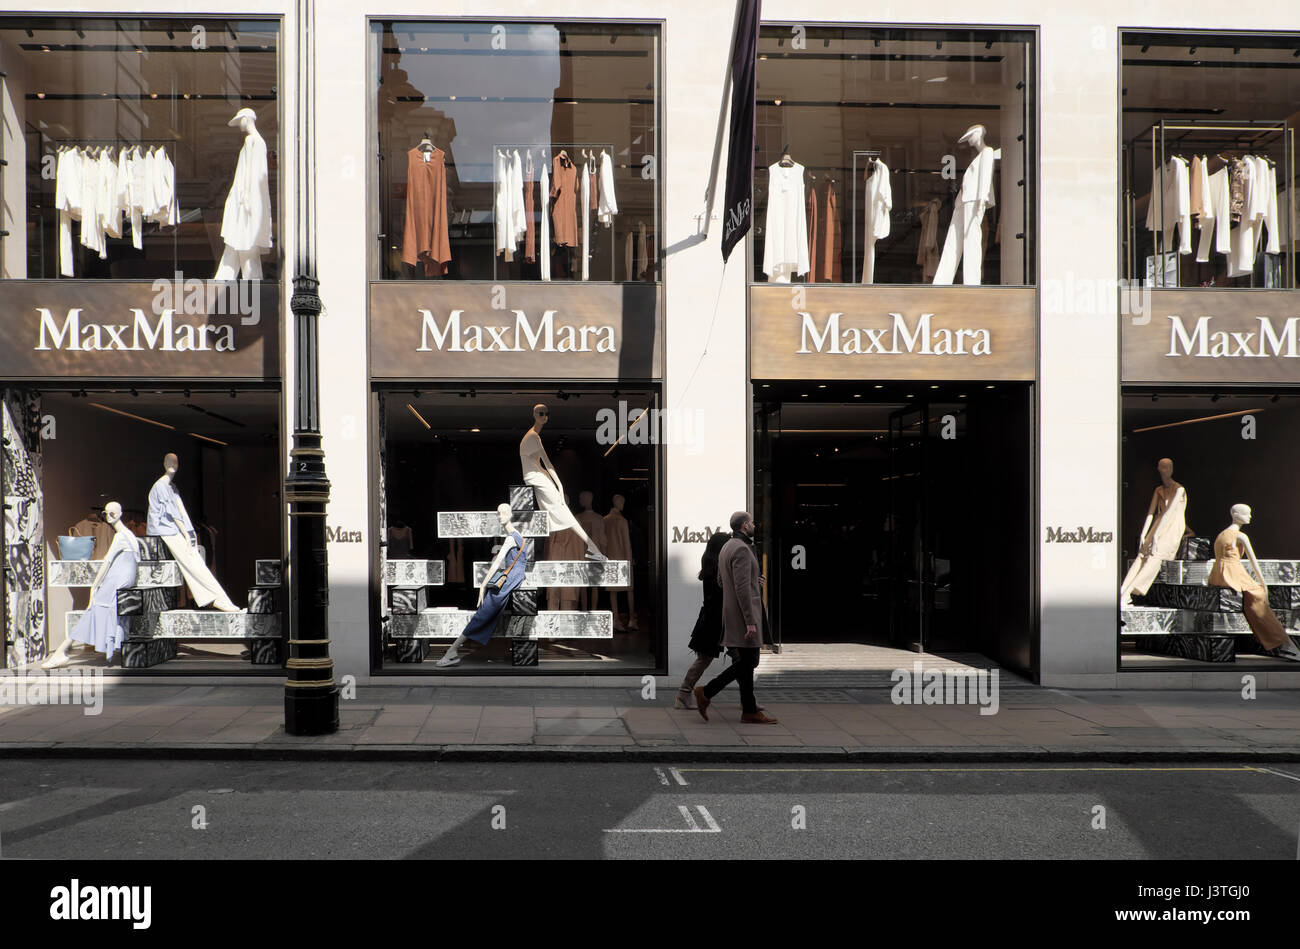 Vue extérieure des acheteurs et des mannequins à la fenêtre du magasin MaxMara Max Mara Old Bond Street à Londres W1 Angleterre Grande-Bretagne KATHY DEWITT Banque D'Images